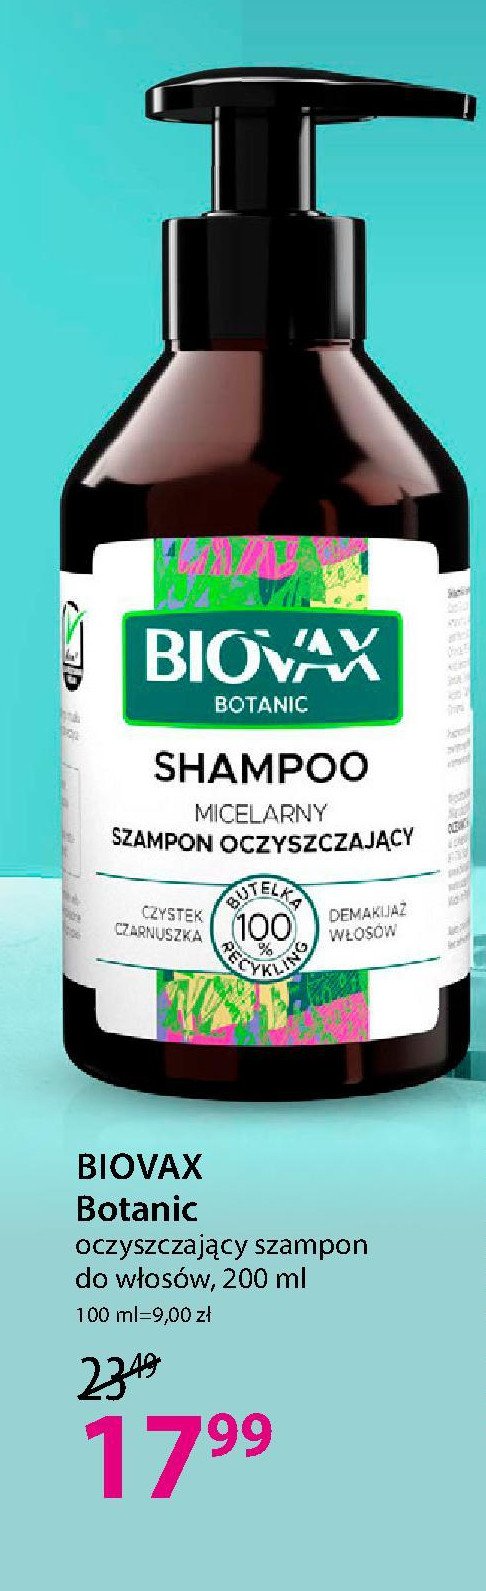 Szampon oczyszczający czystek i czarnuszka Biovax promocja